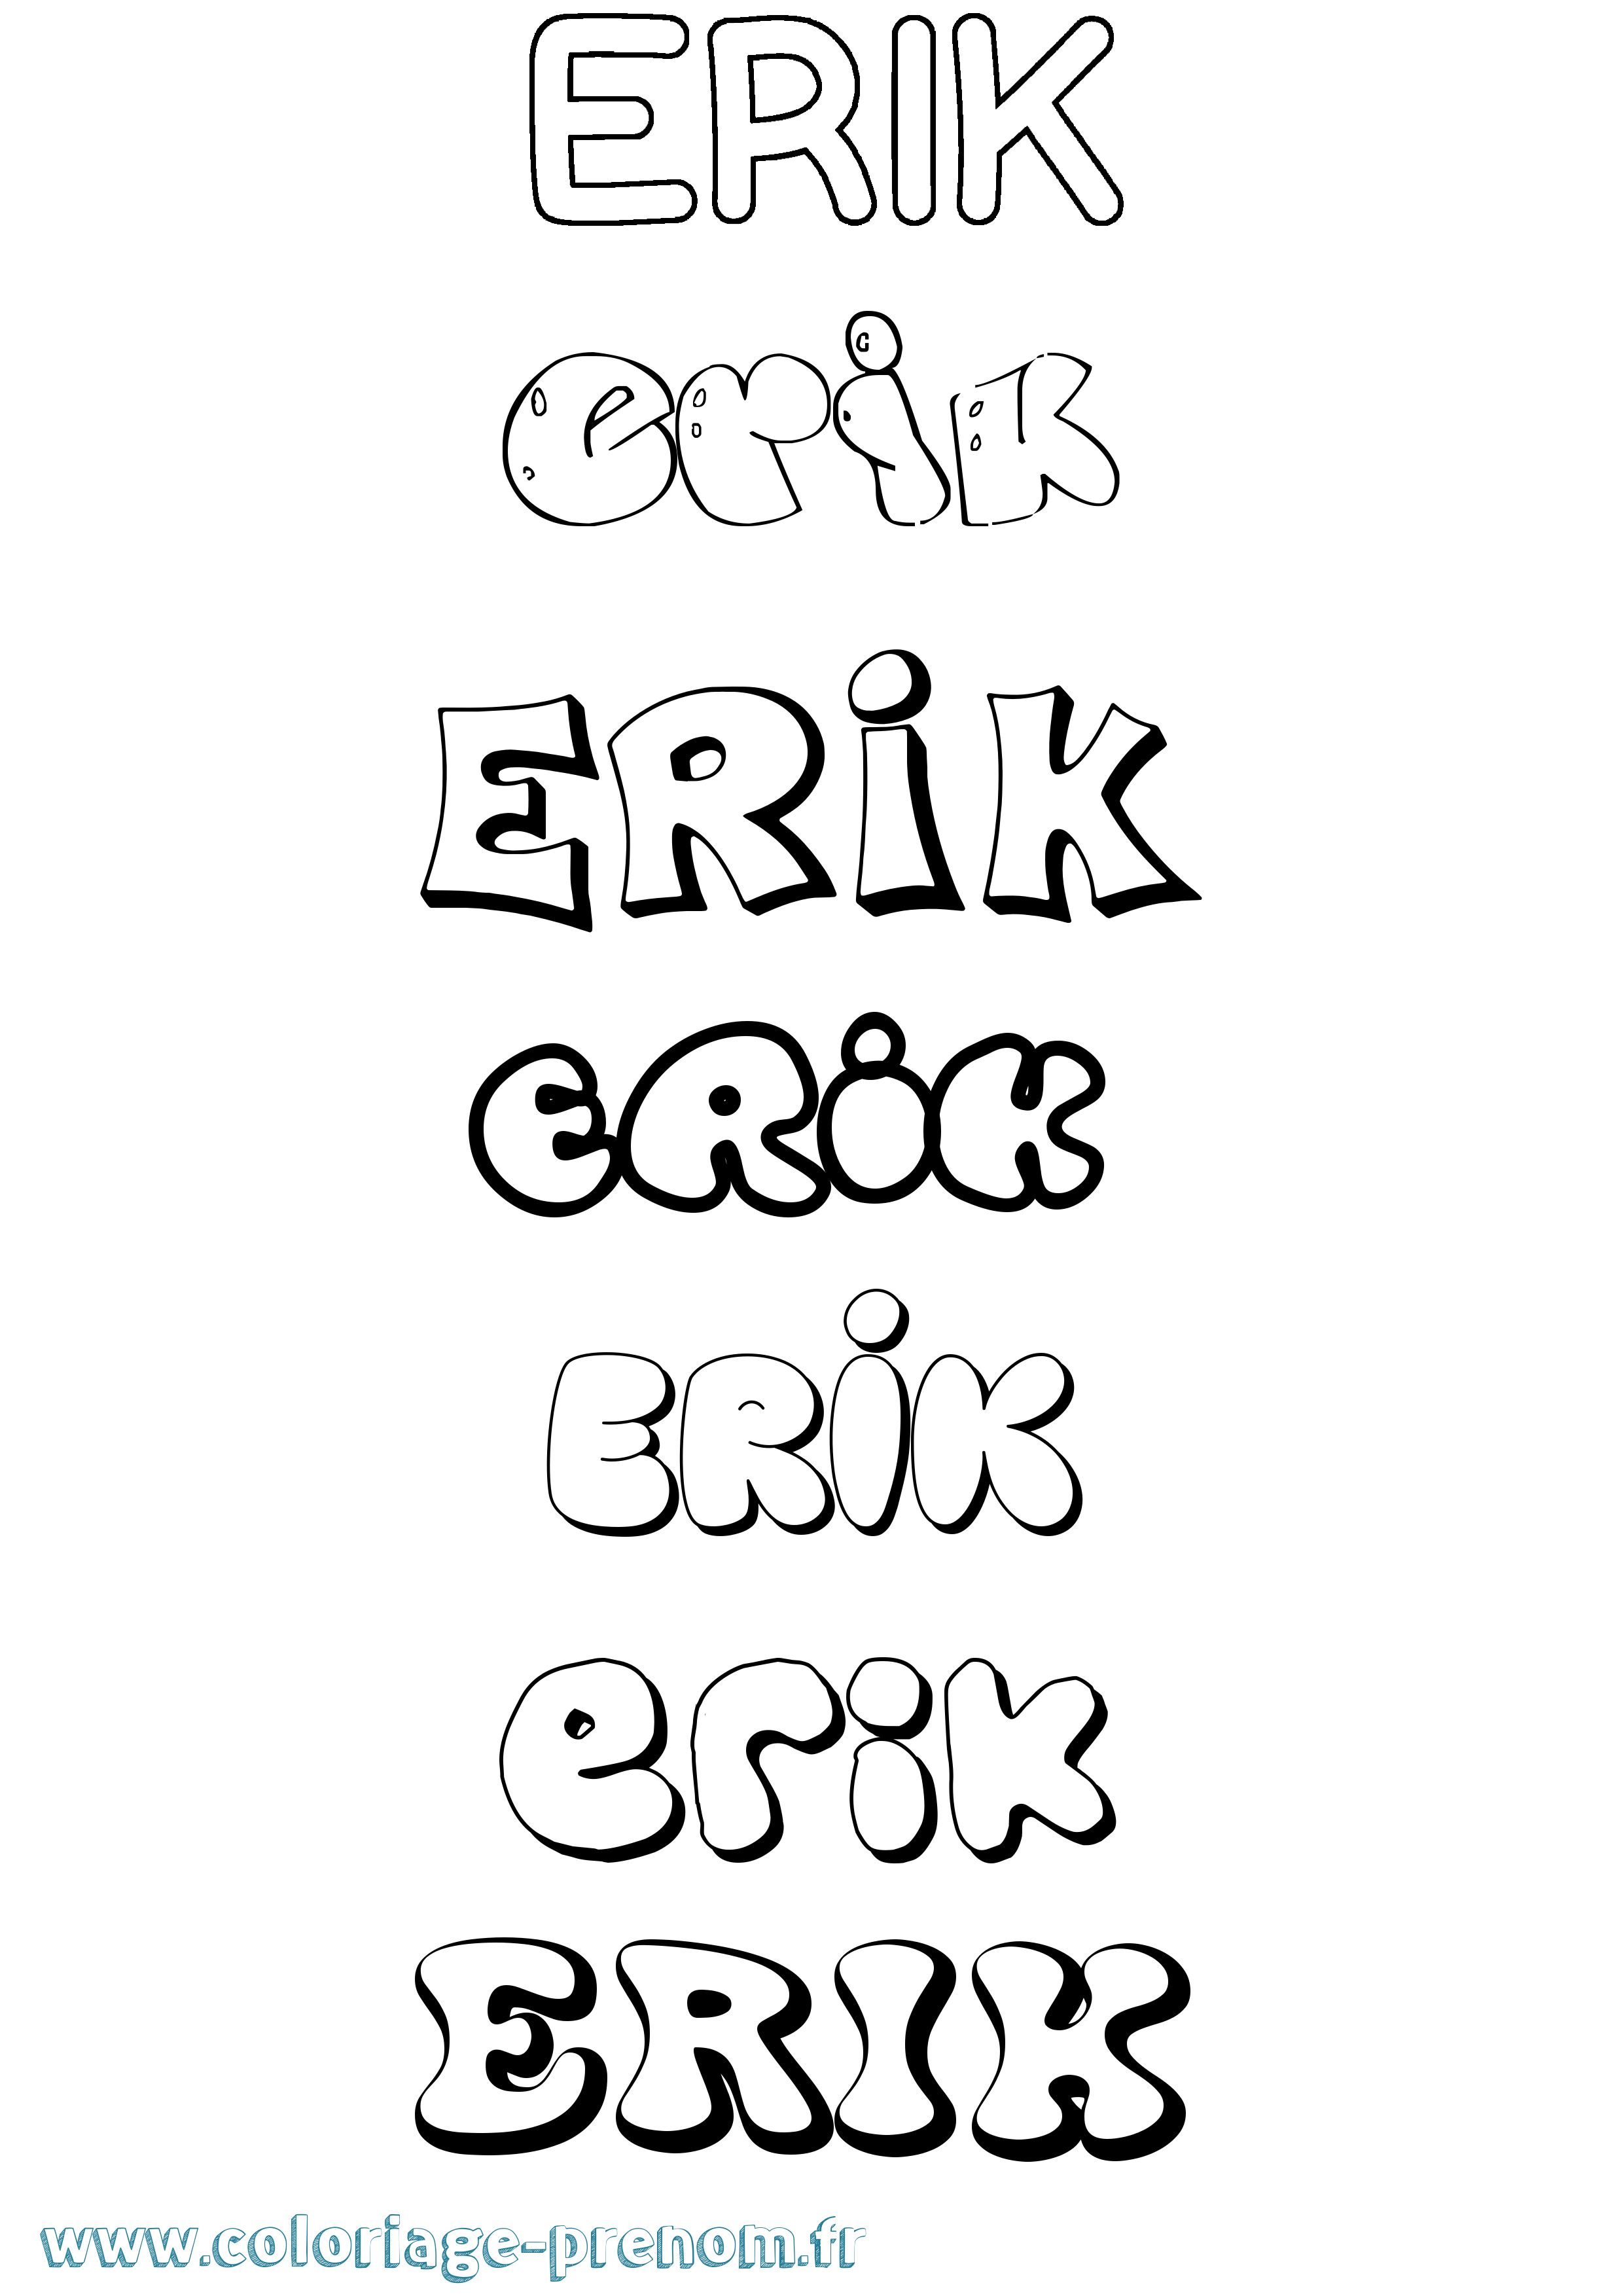 Coloriage prénom Erik Bubble